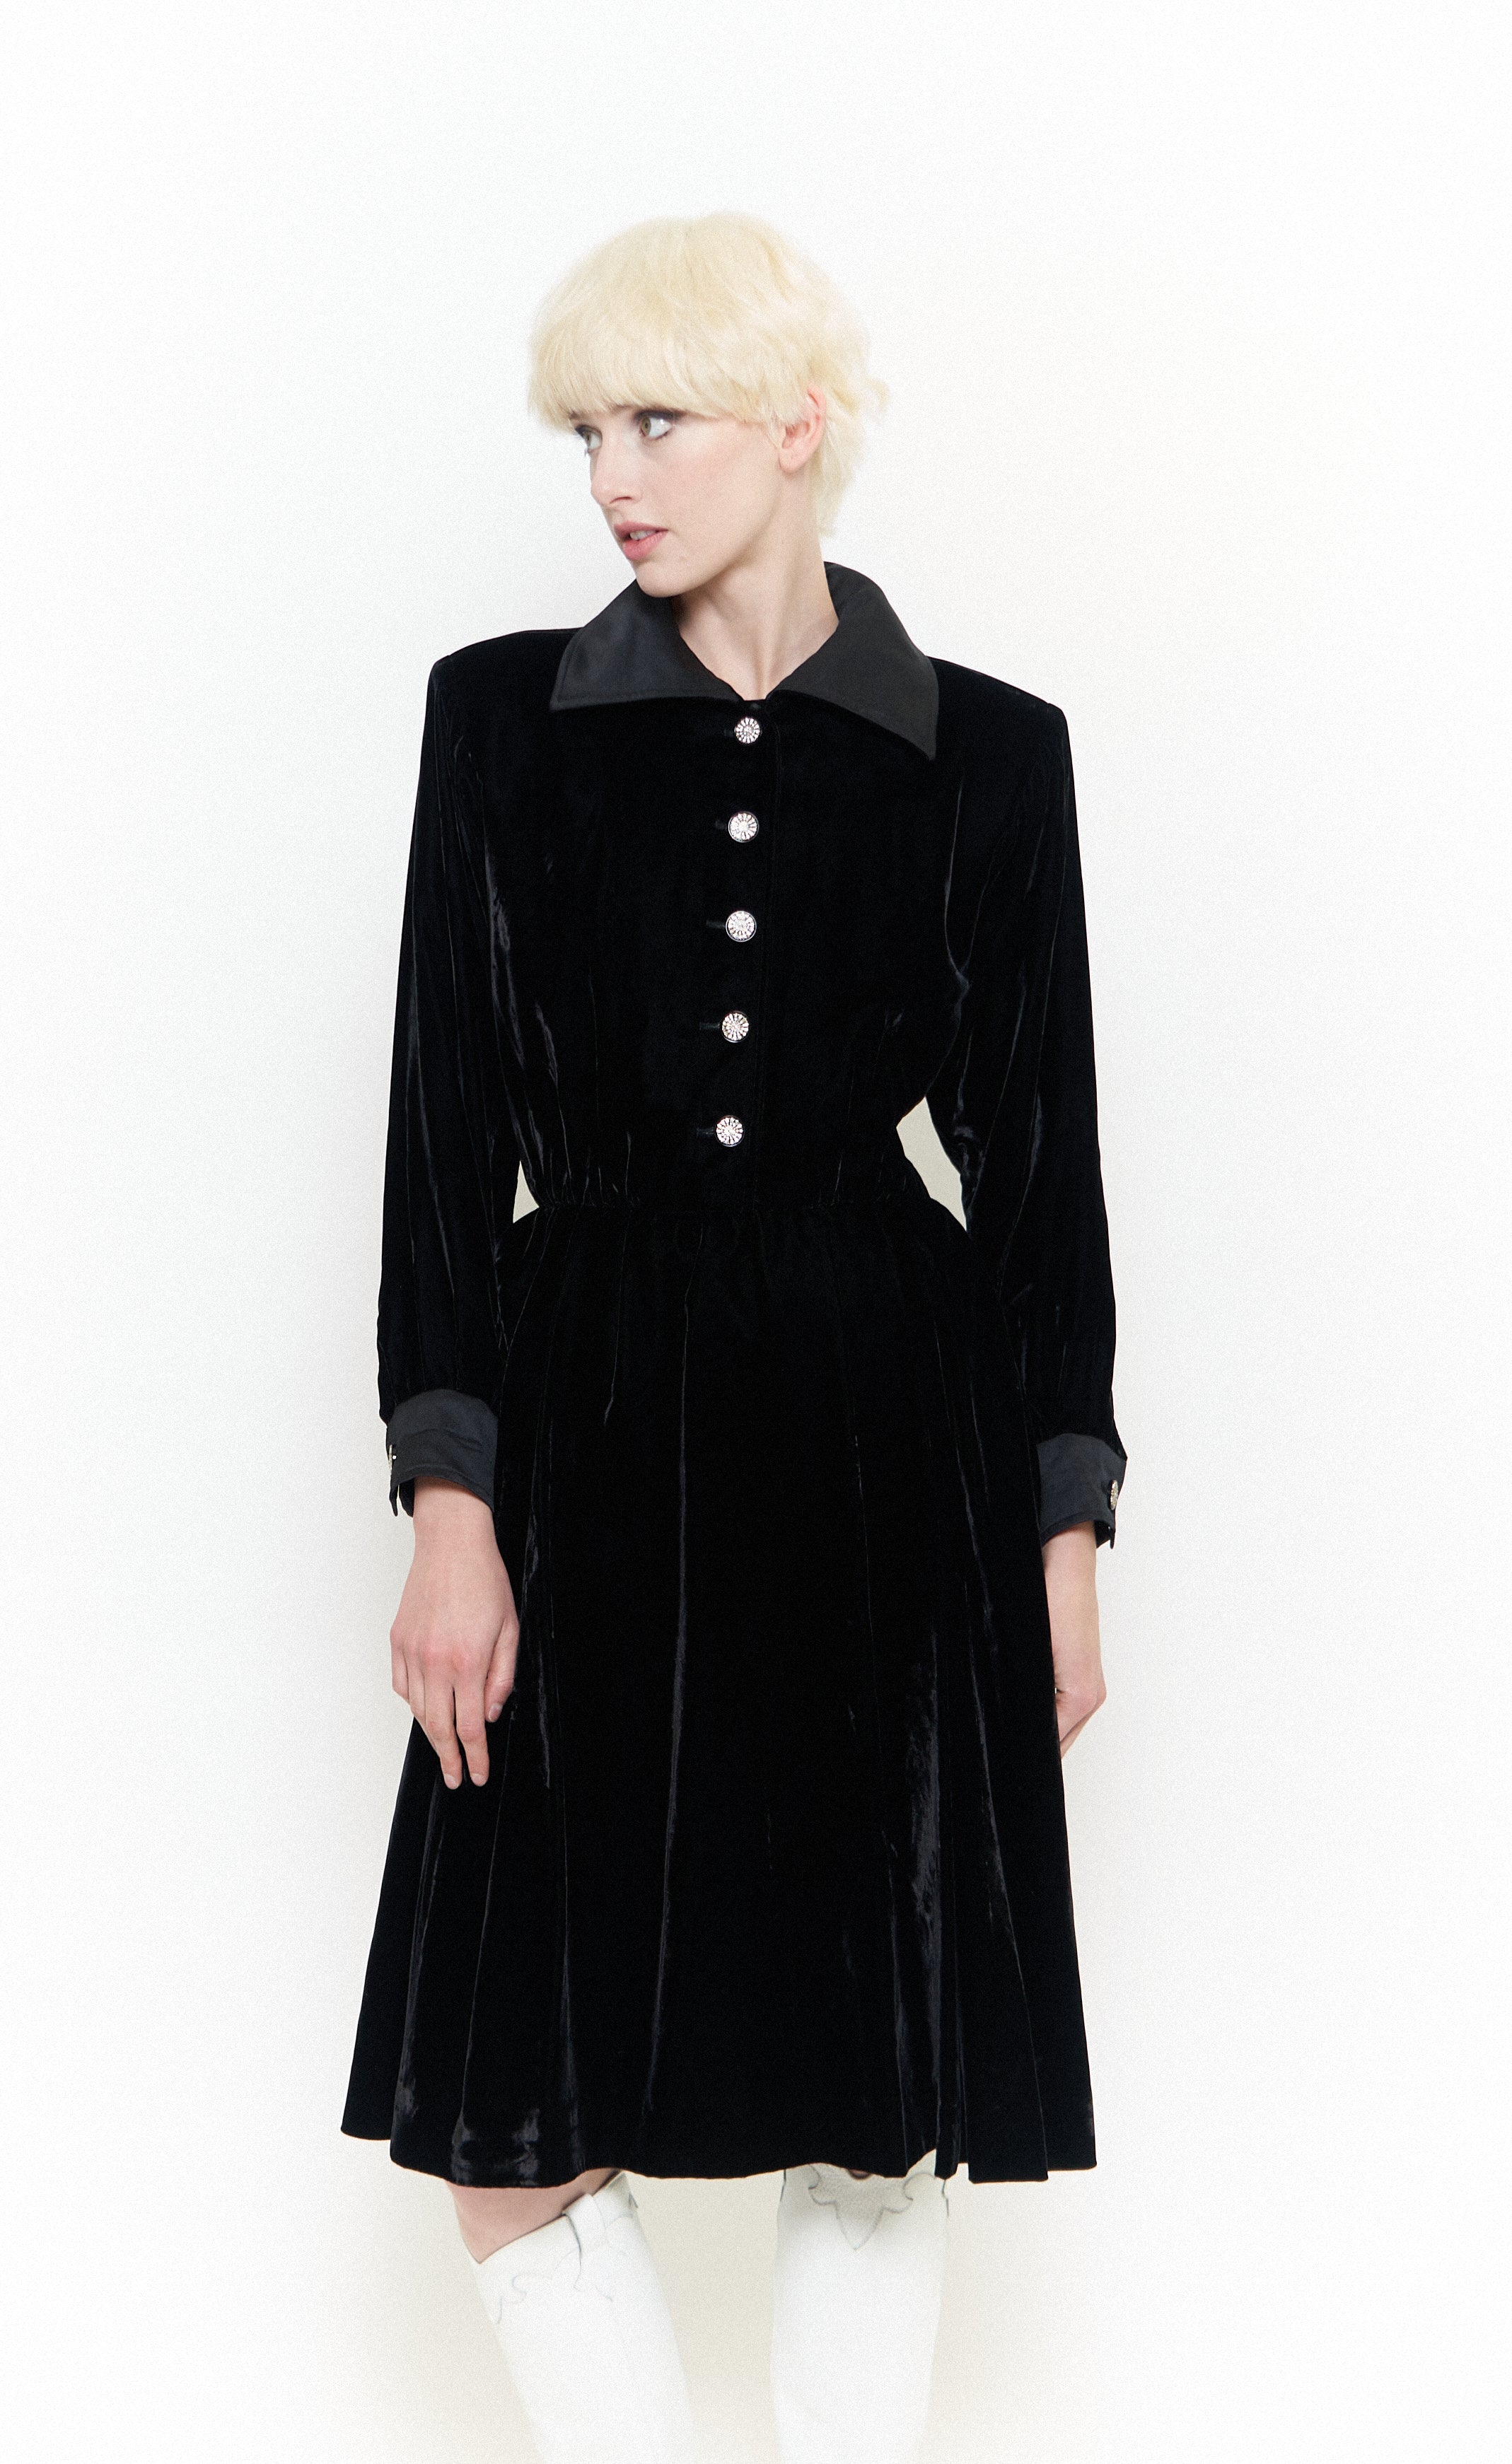 Yves Saint Laurent <br> 70's Rive Gauche velvet collared dress